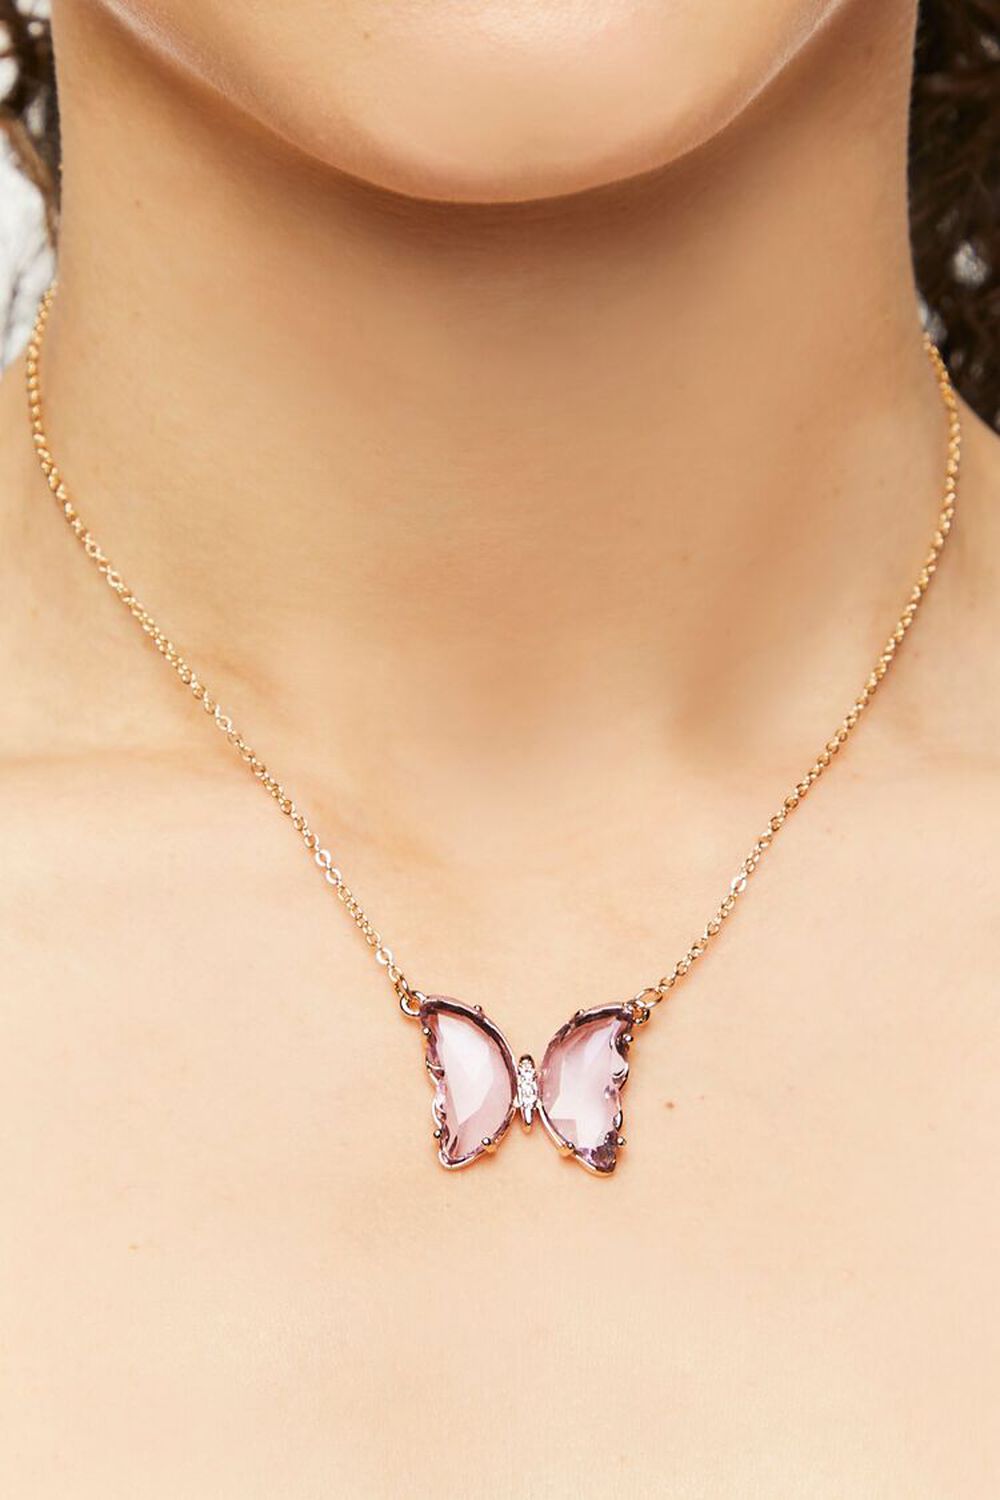 GOLD/PURPLE Faux Gem Butterfly Pendant Necklace, image 1